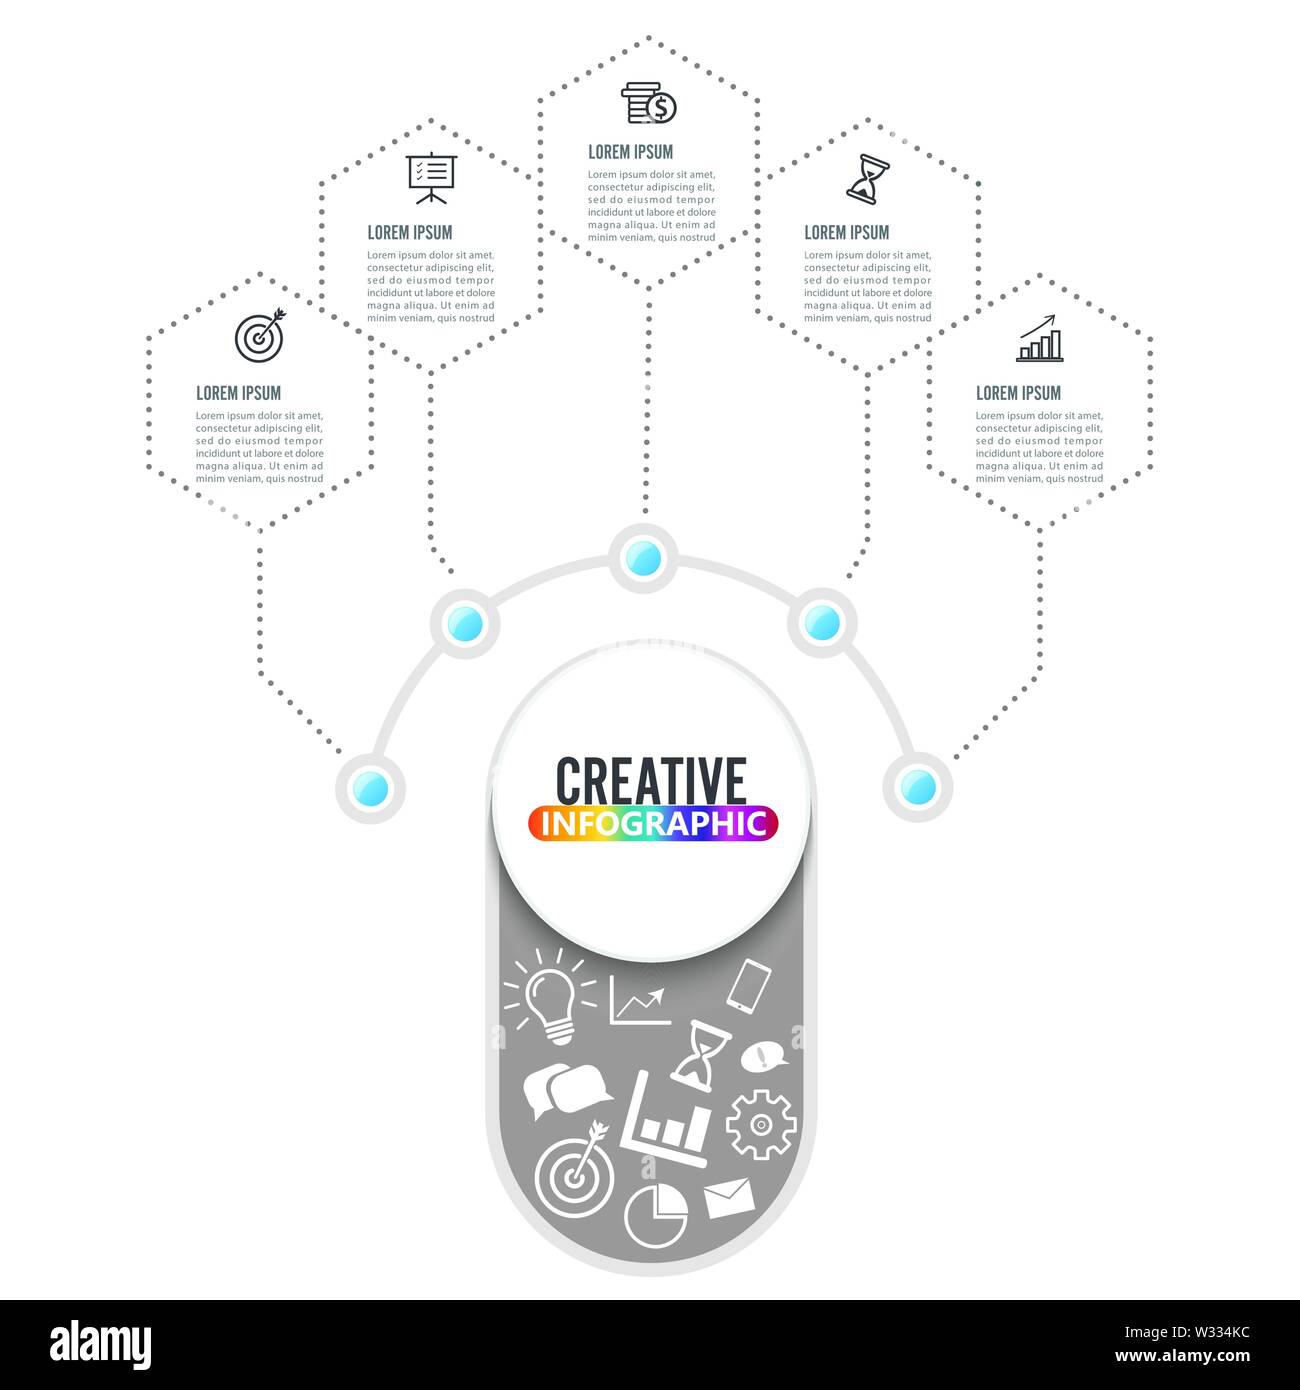 Vektor Infografik Vorlage mit 3D-Papier Etikett, Integrierte kreisen. Business Konzept mit Optionen. Für Inhalte, Schaltplan, Flussdiagramm, Schritte, Teile. Stock Vektor